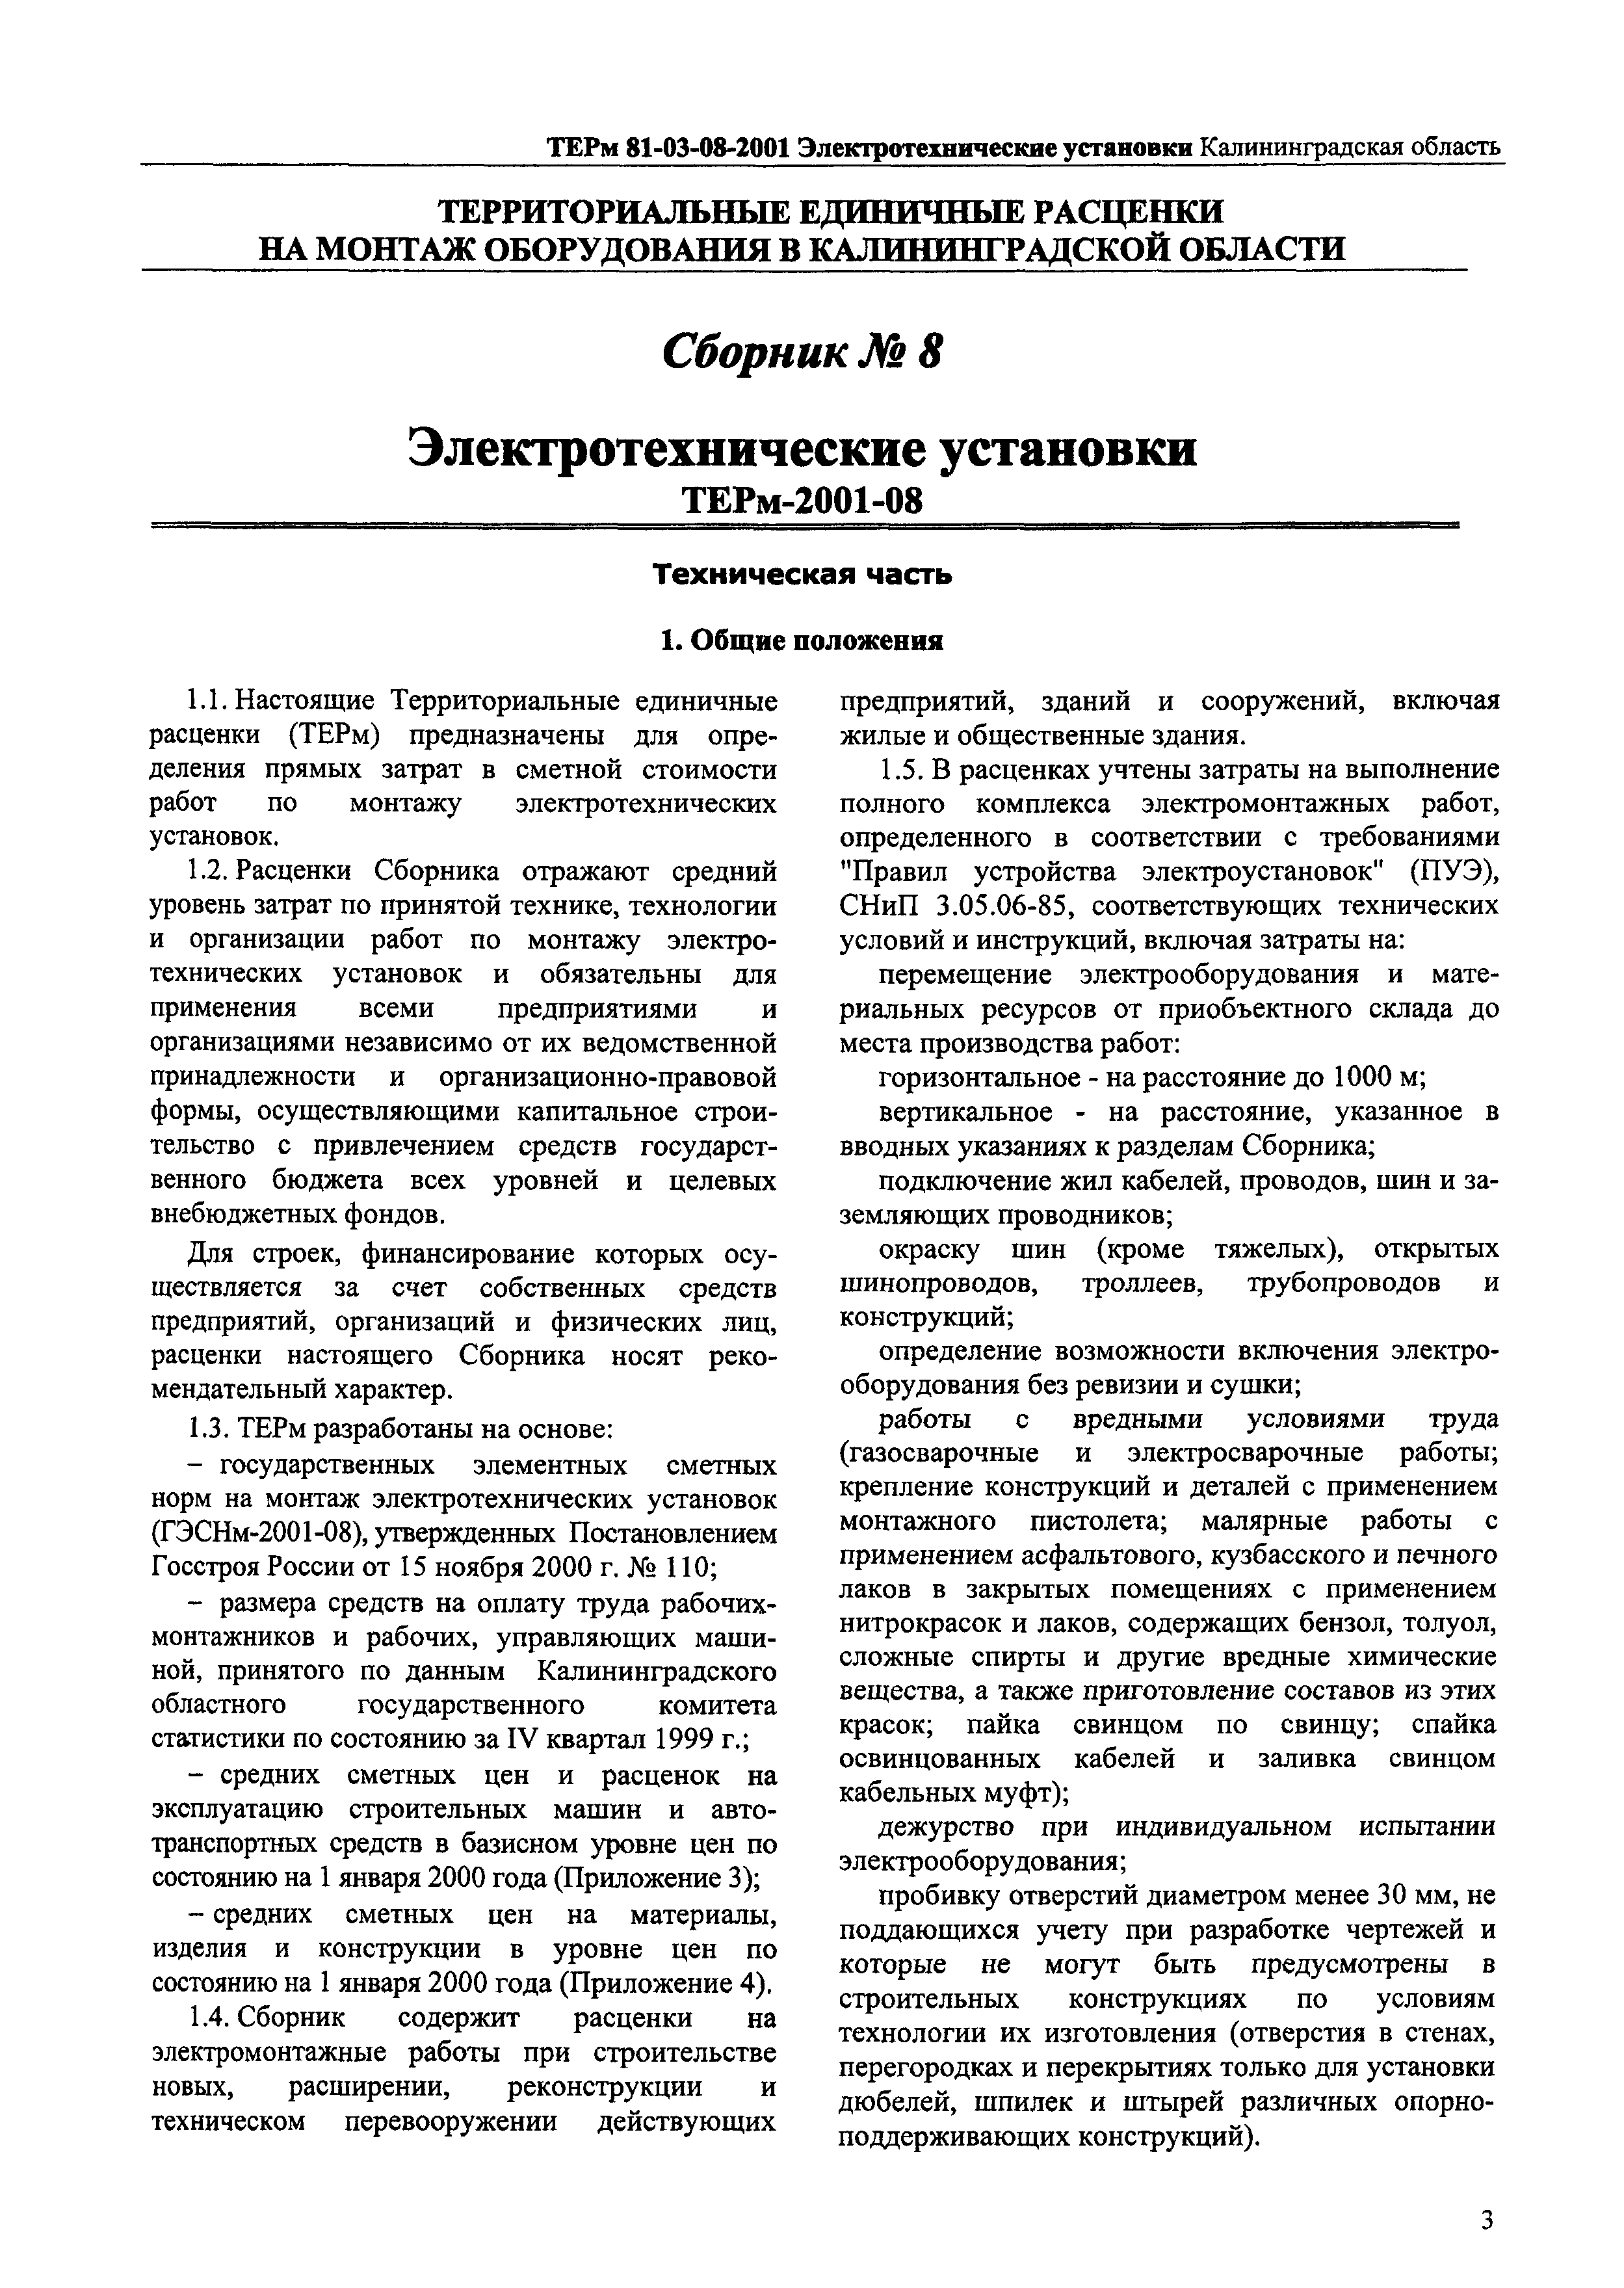 ТЕРм Калининградская область 2001-08